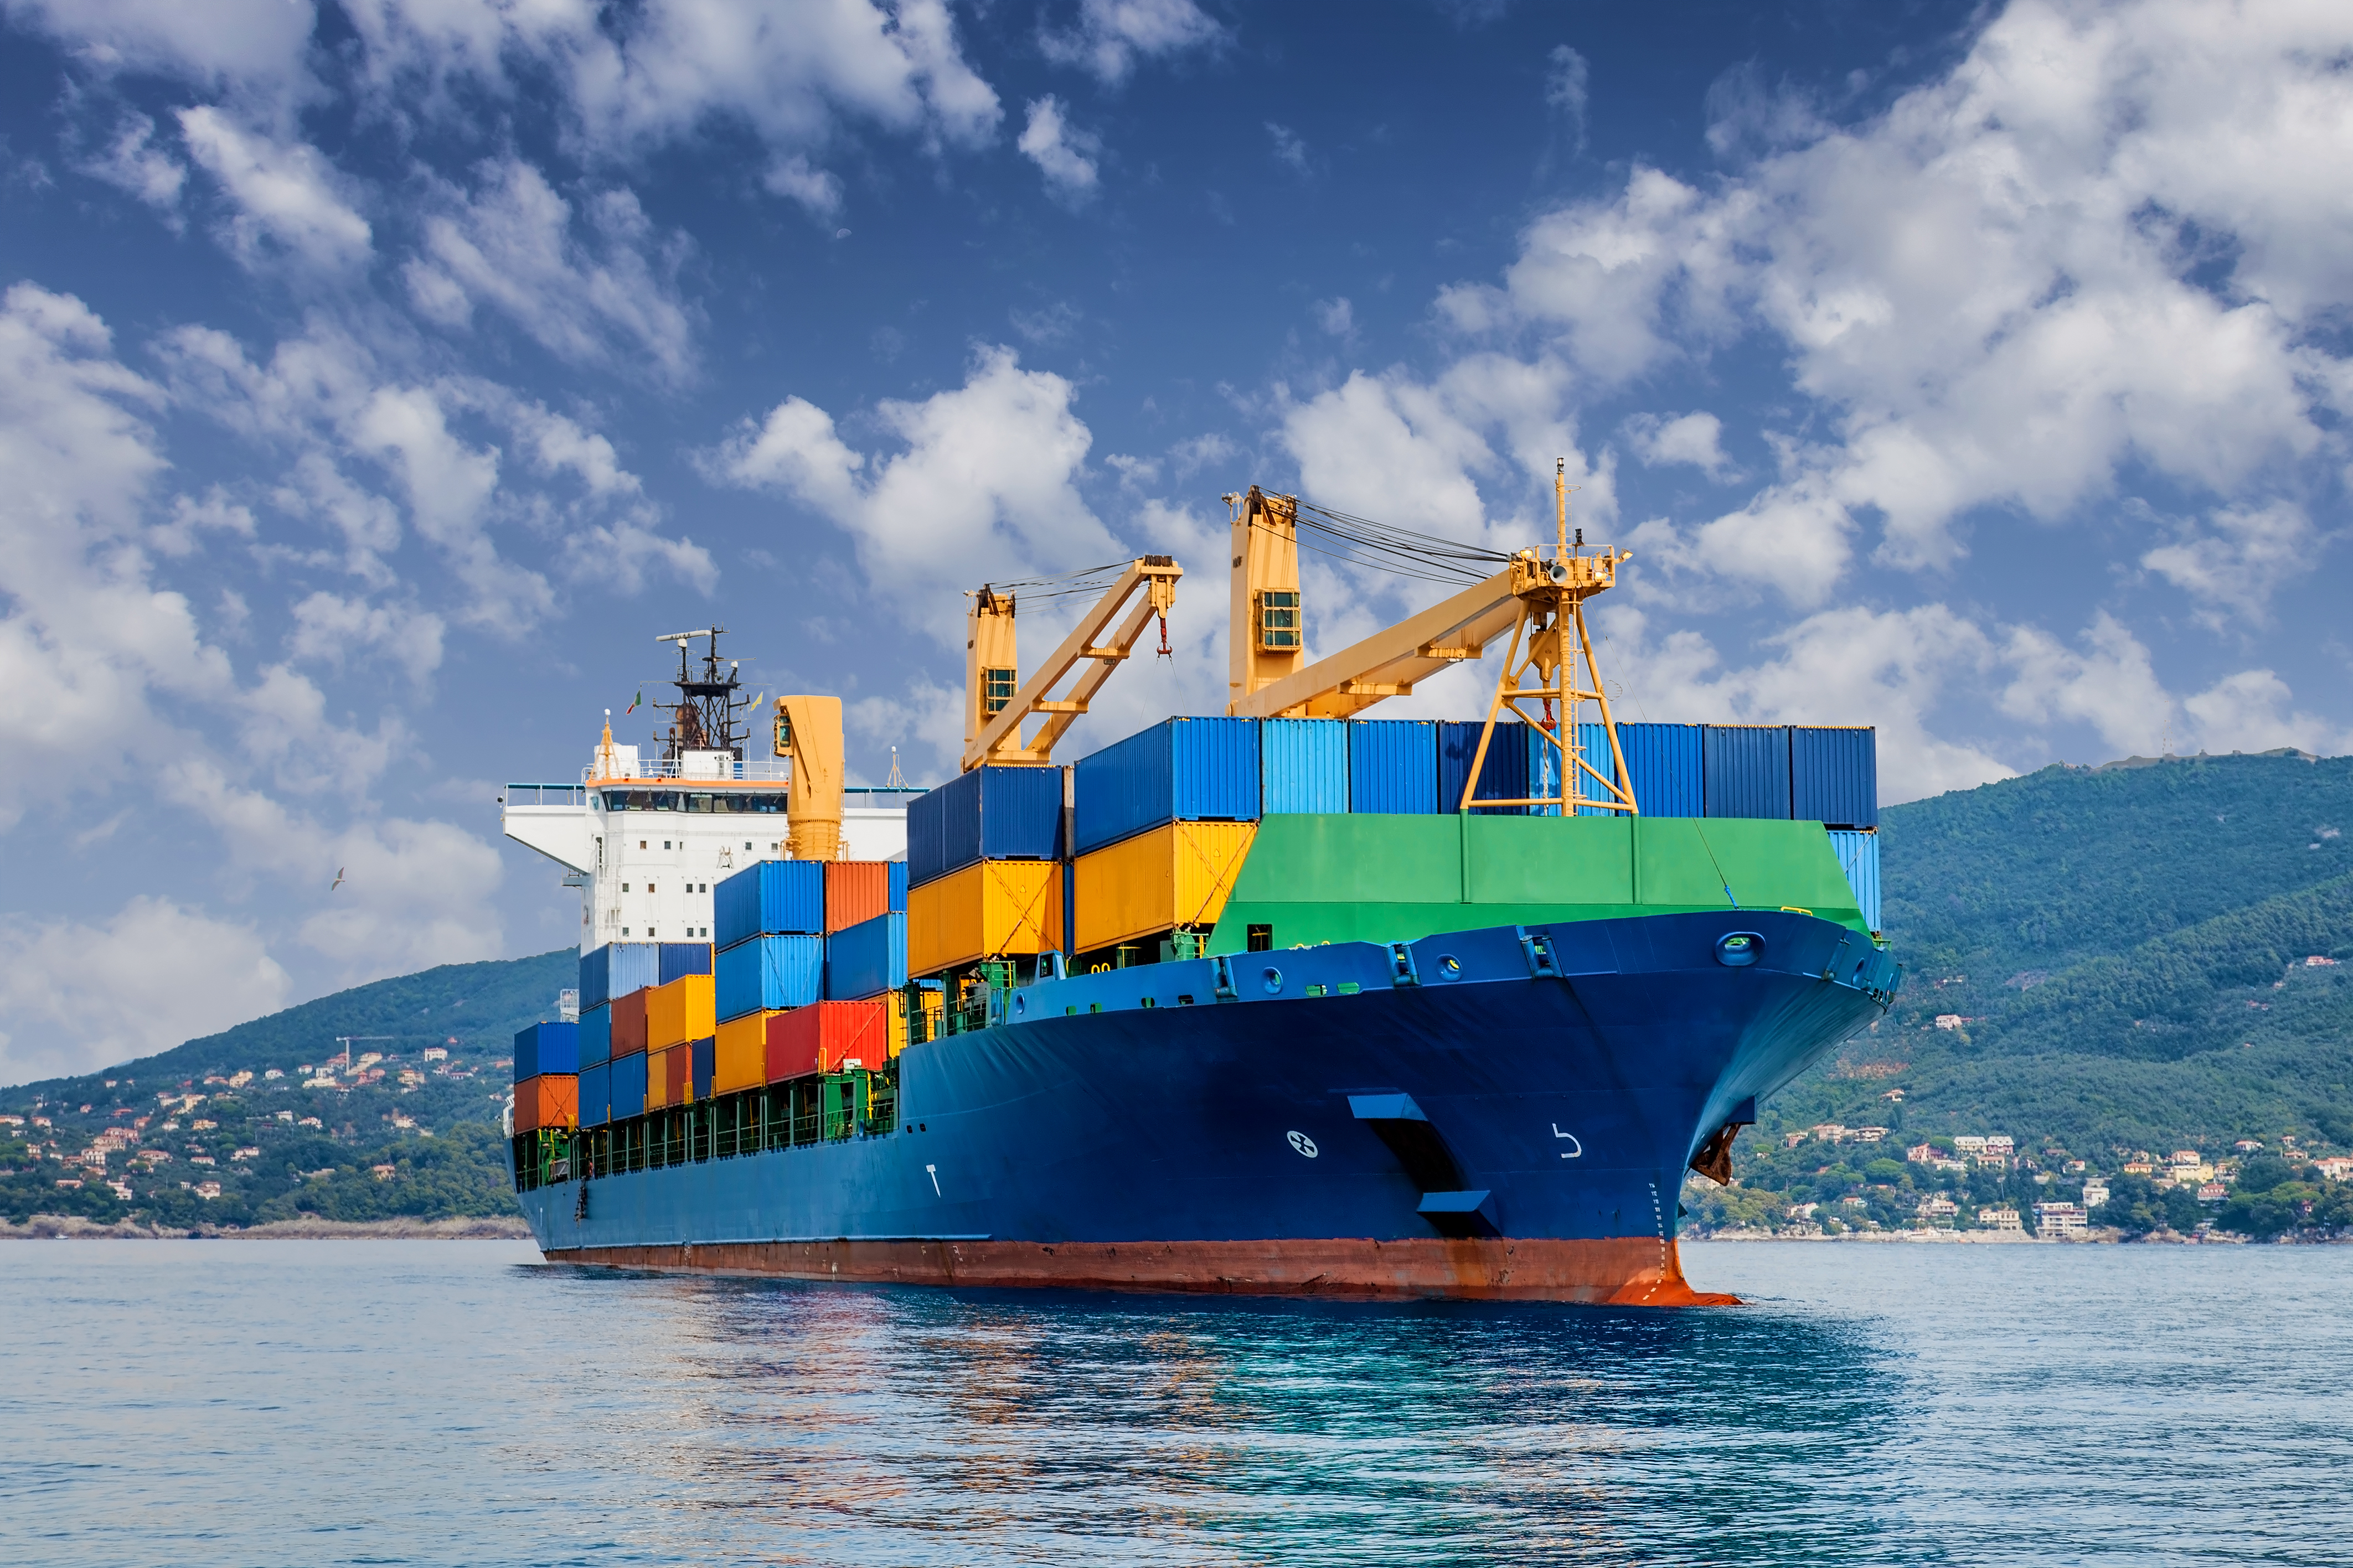 Sazby kontejnerové přepravy klesly a export již není „těžko k nalezení“